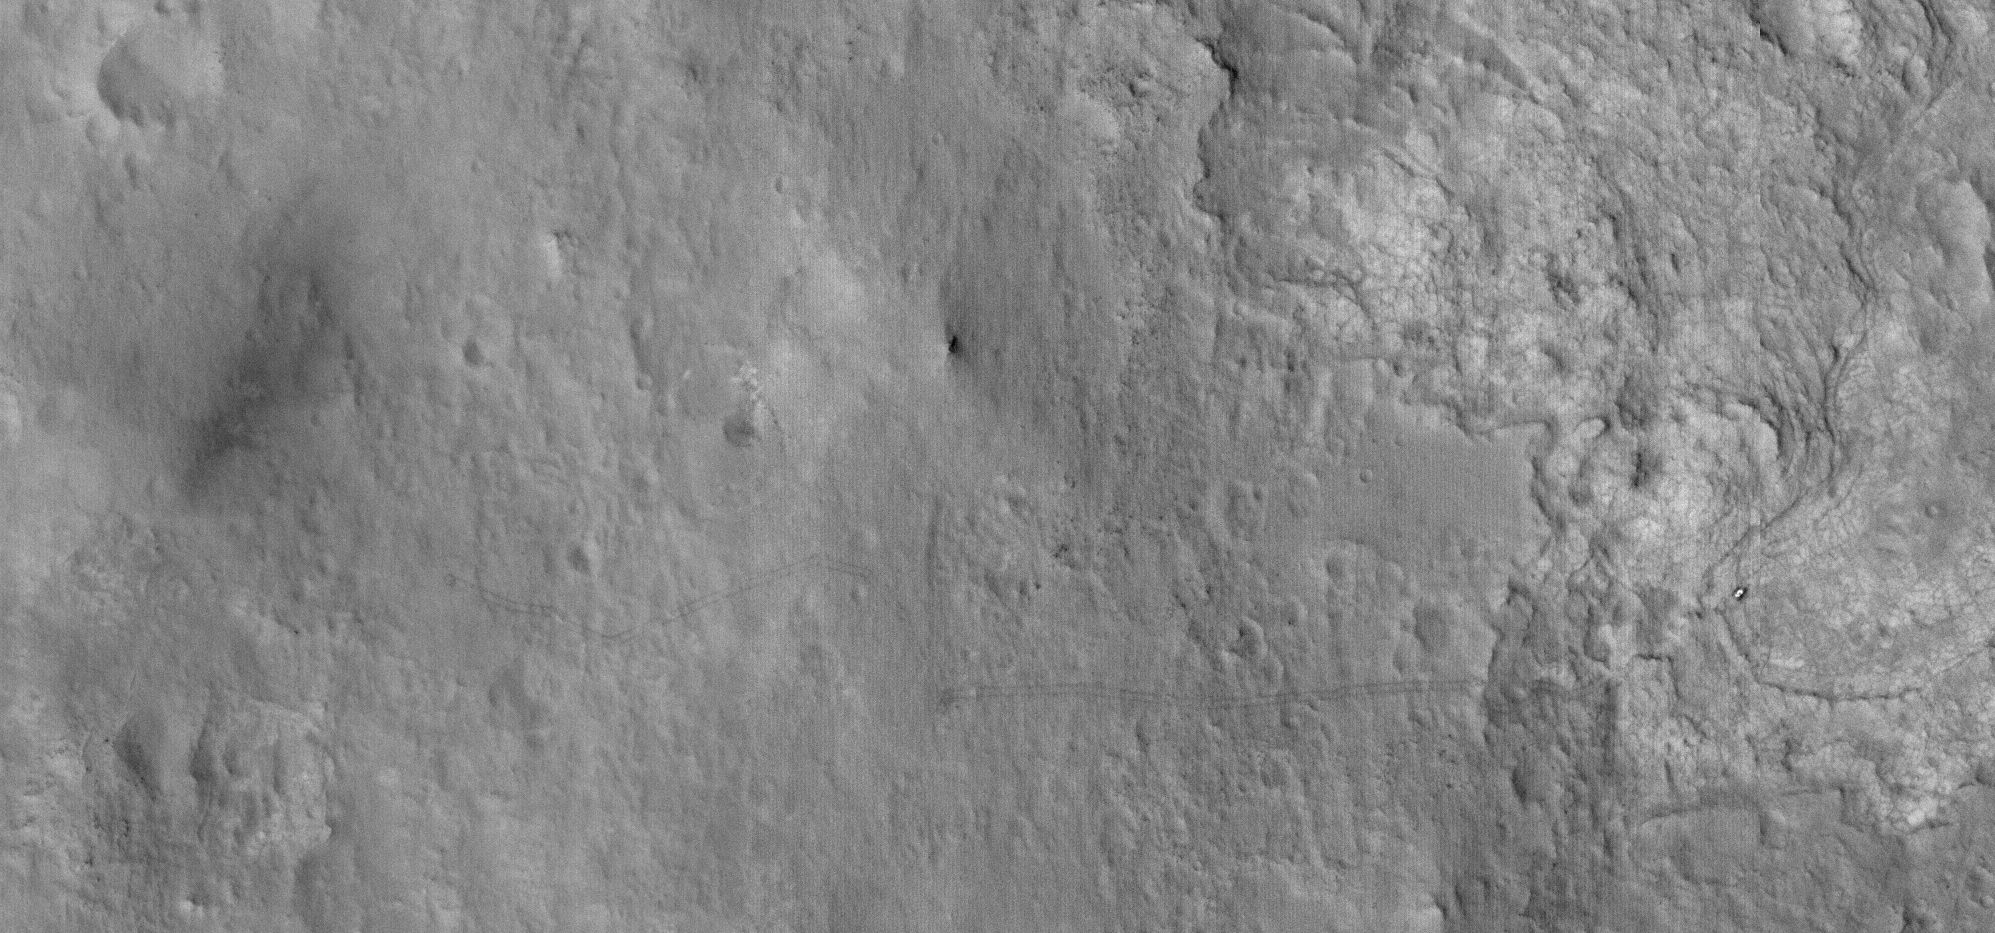 由 MRO 拍摄的好奇号在火星上移动的轨迹。作为参考，好奇号宽度接近 3 米，轮胎宽度约为 0.5 米。来源：NASA/JPL